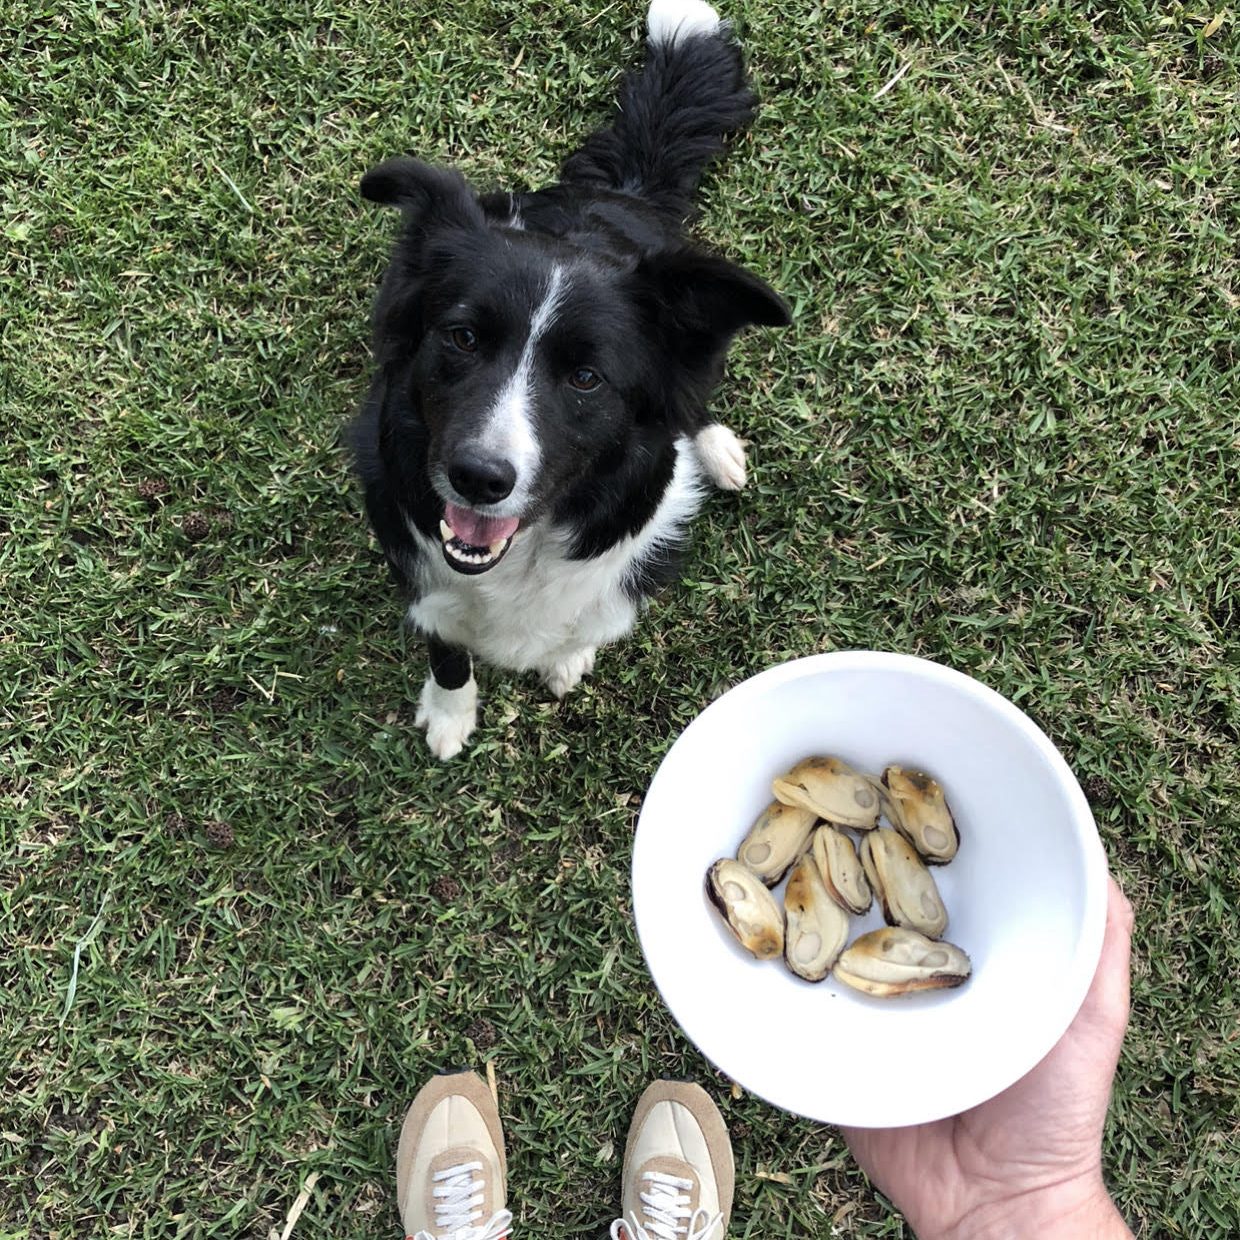 Poudre de moules vertes de Nouvelle-Zélande: Super aliment pour chiens